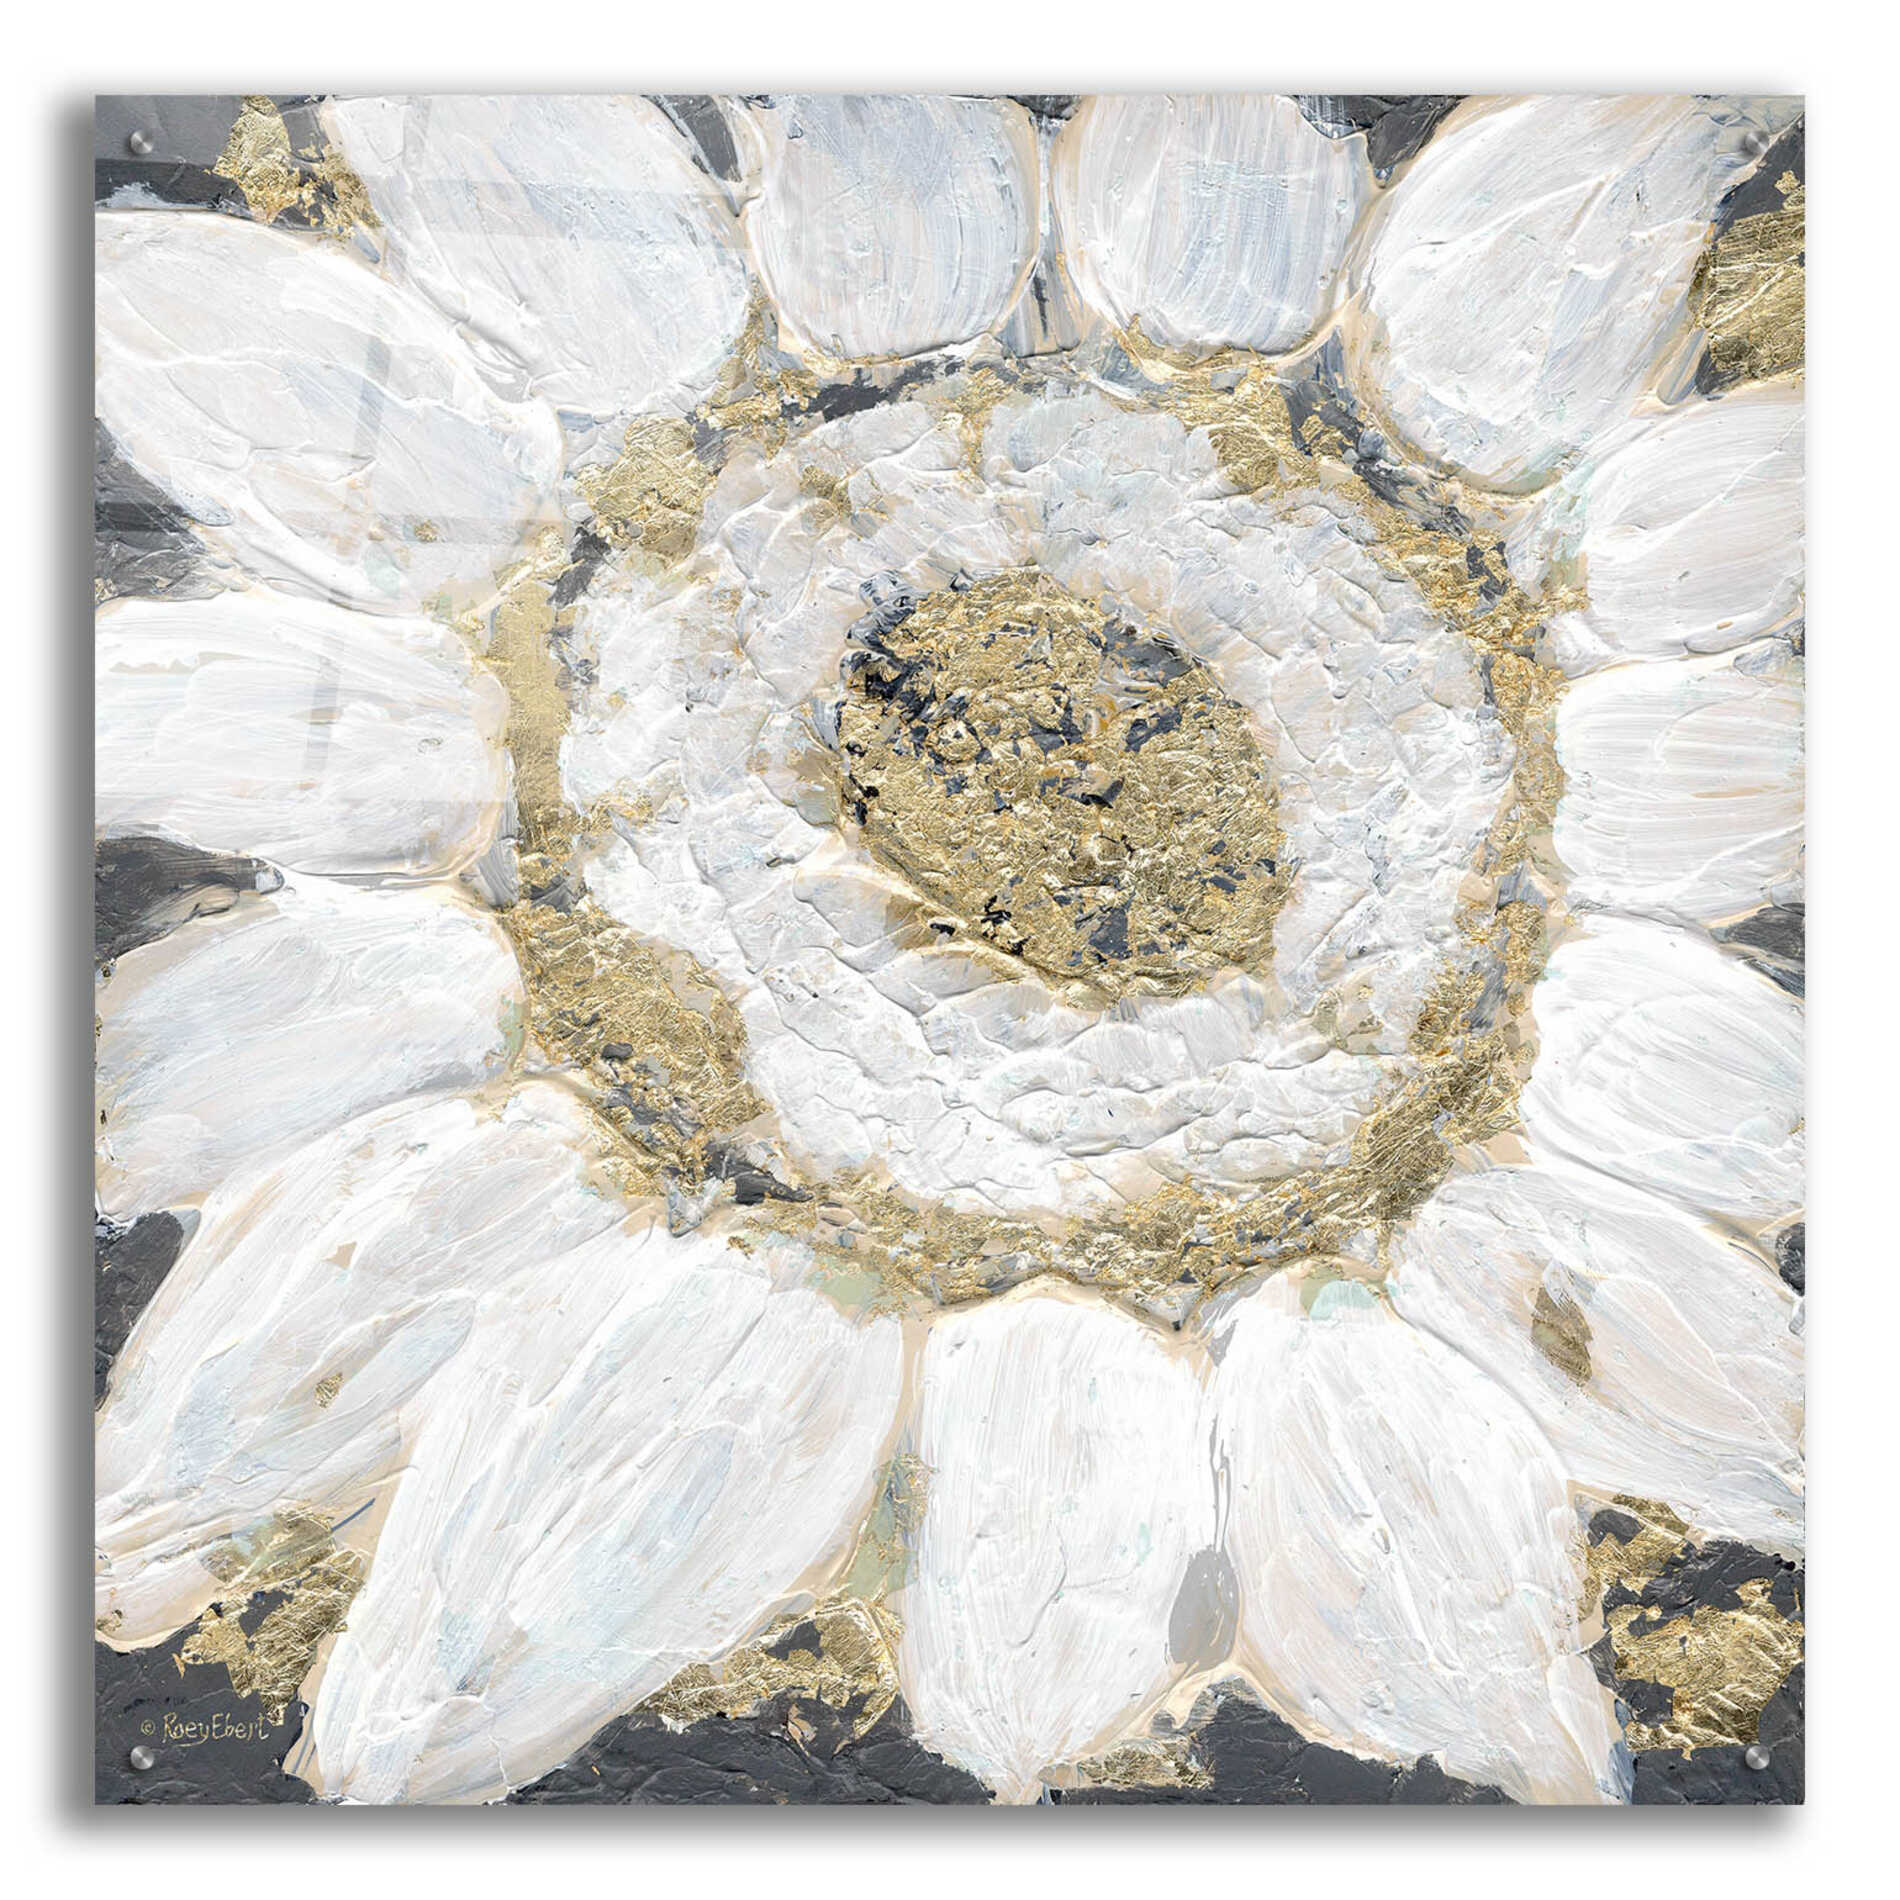 Epic Art 'Golden Sunflower' by Roey Ebert, Acrylic Glass Wall Art,36x36